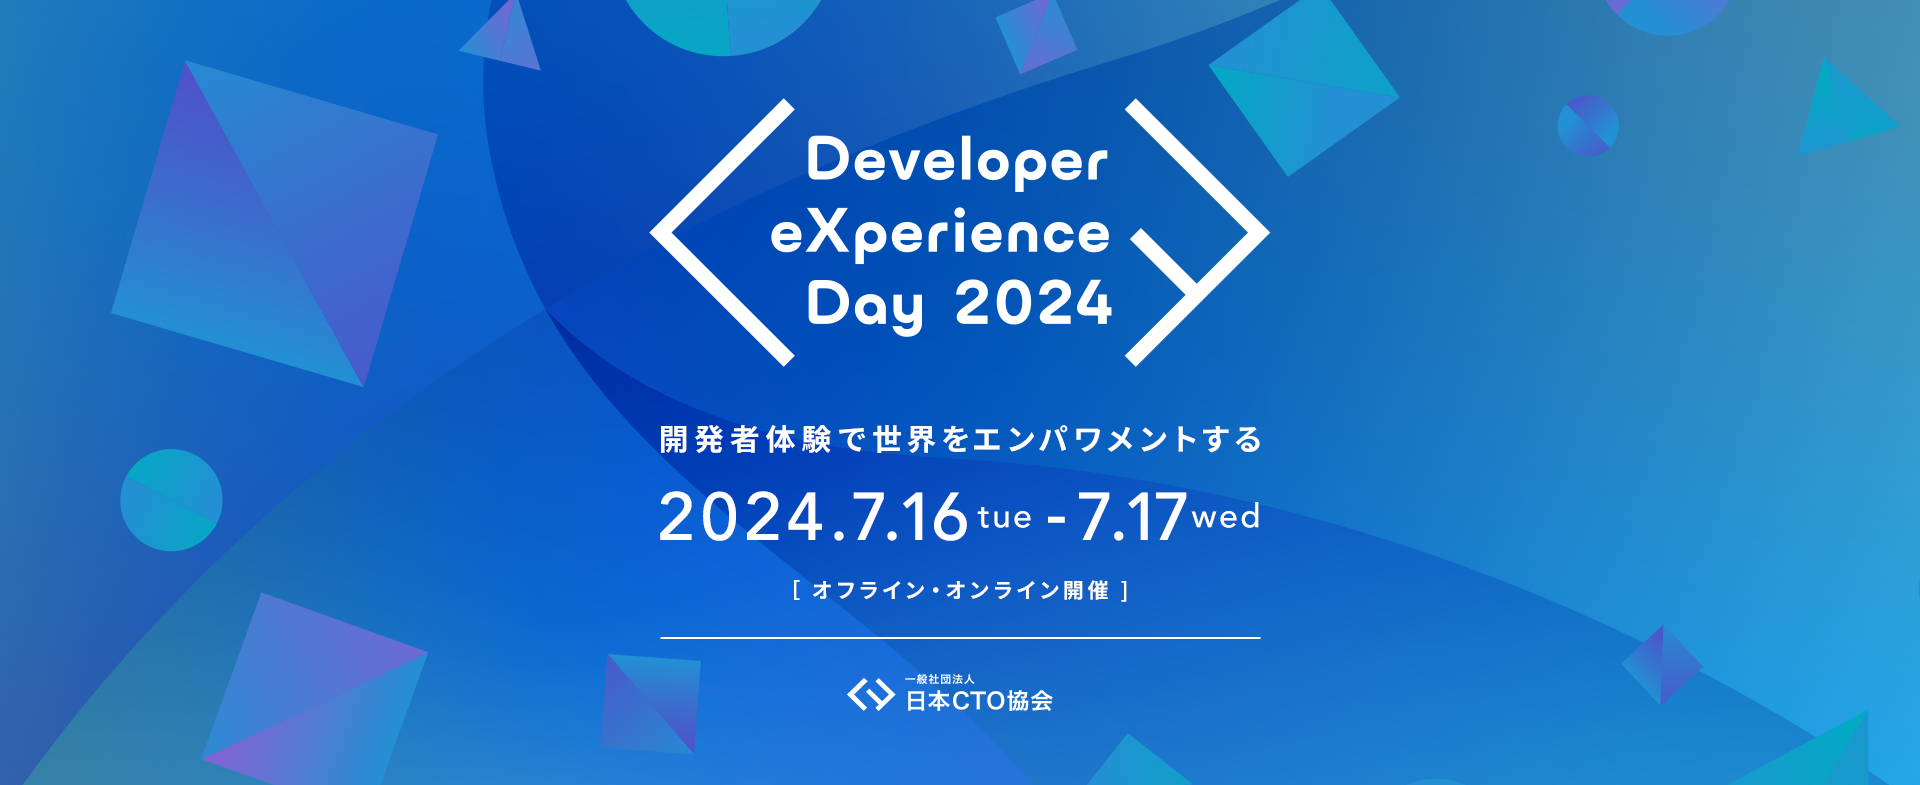 日本CTO協会主催「Developer eXperience Day 2024」にアスエネ代表 西和田が登壇